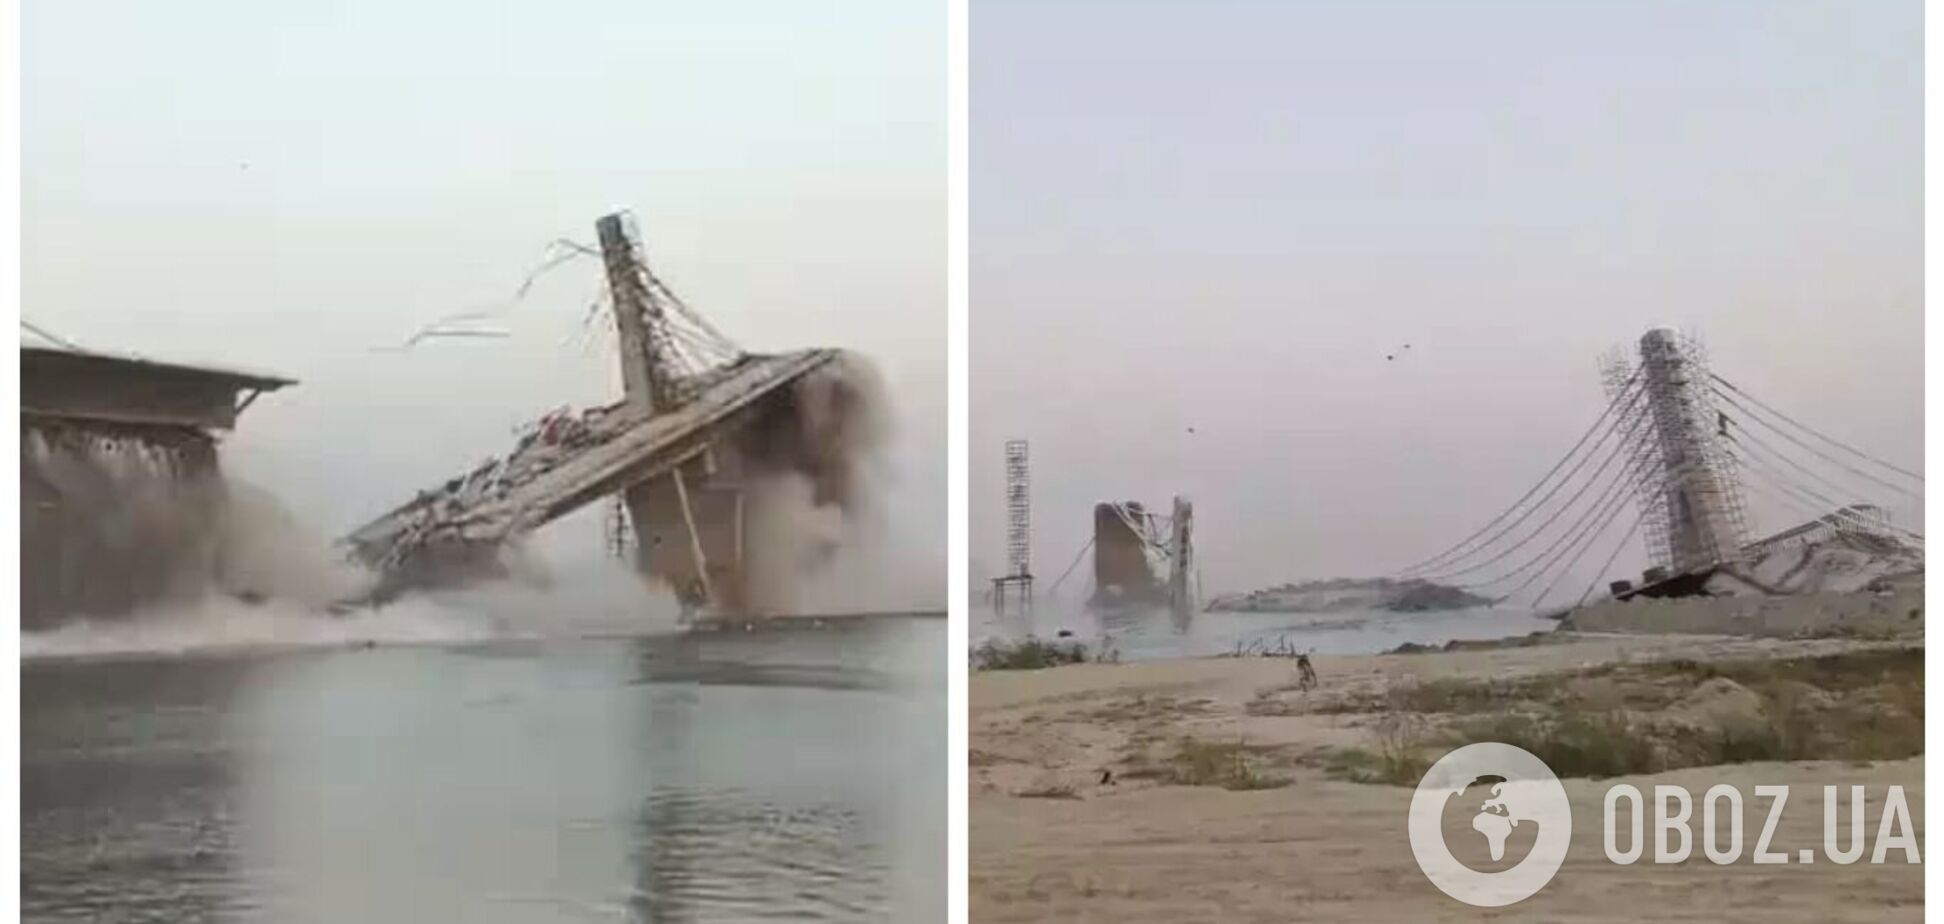 В Индии во второй раз обрушился мост, на строительство которого было выделено более 200 млн долларов: сроки его сдачи переносили 8 раз. Видео